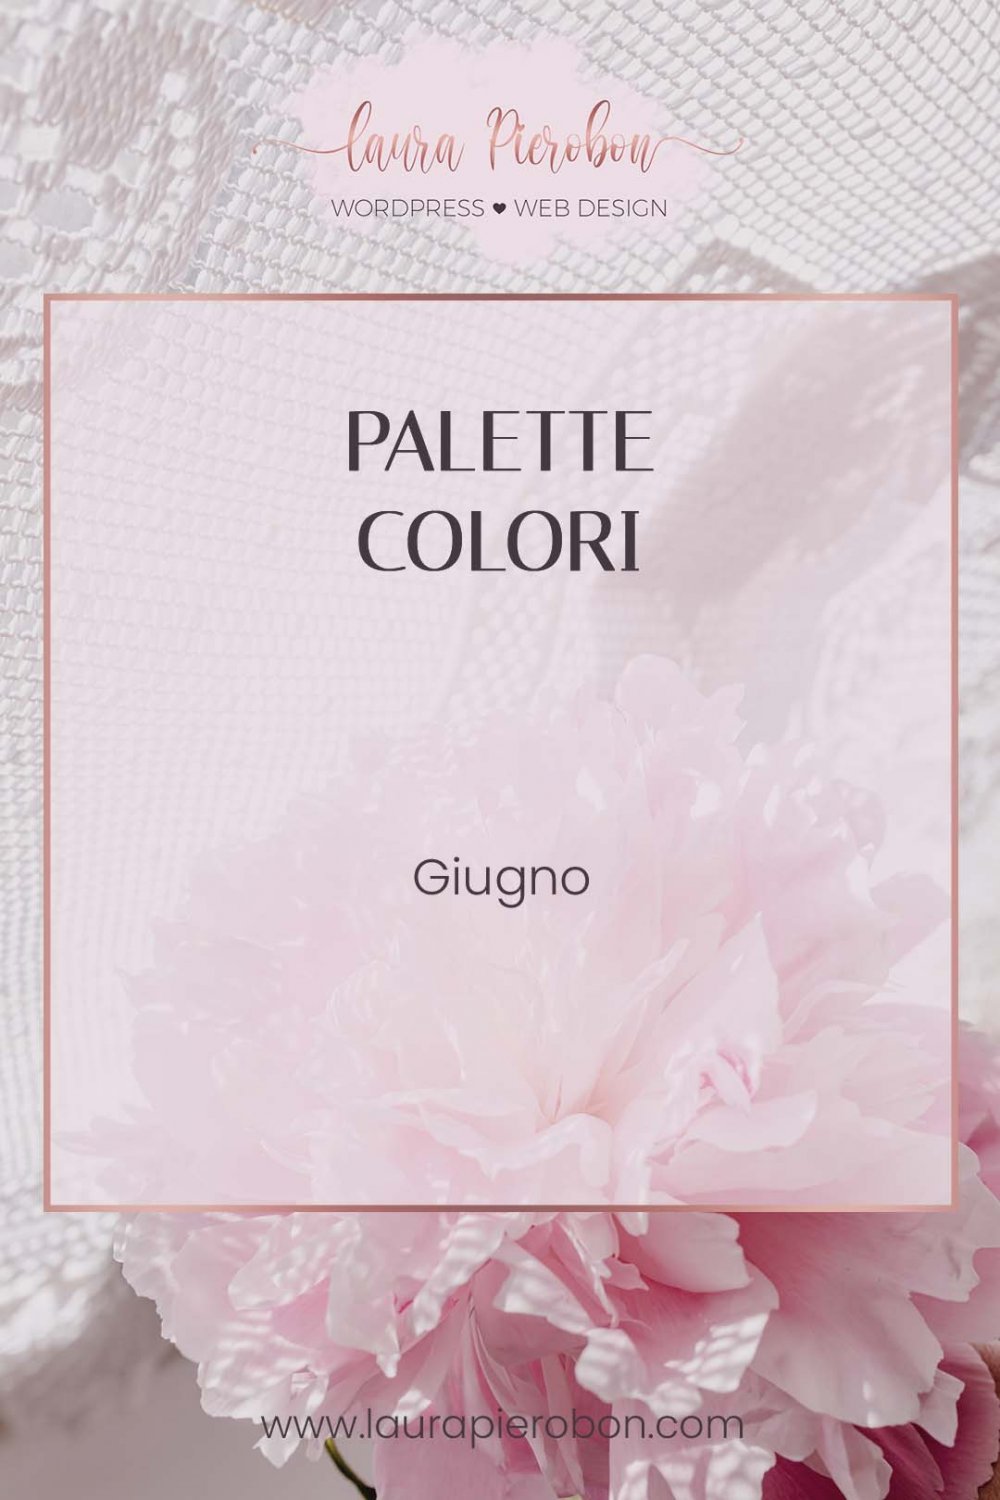 Palette colori di Giugno © Laura Pierobon - WordPress ❤︎ Web Design